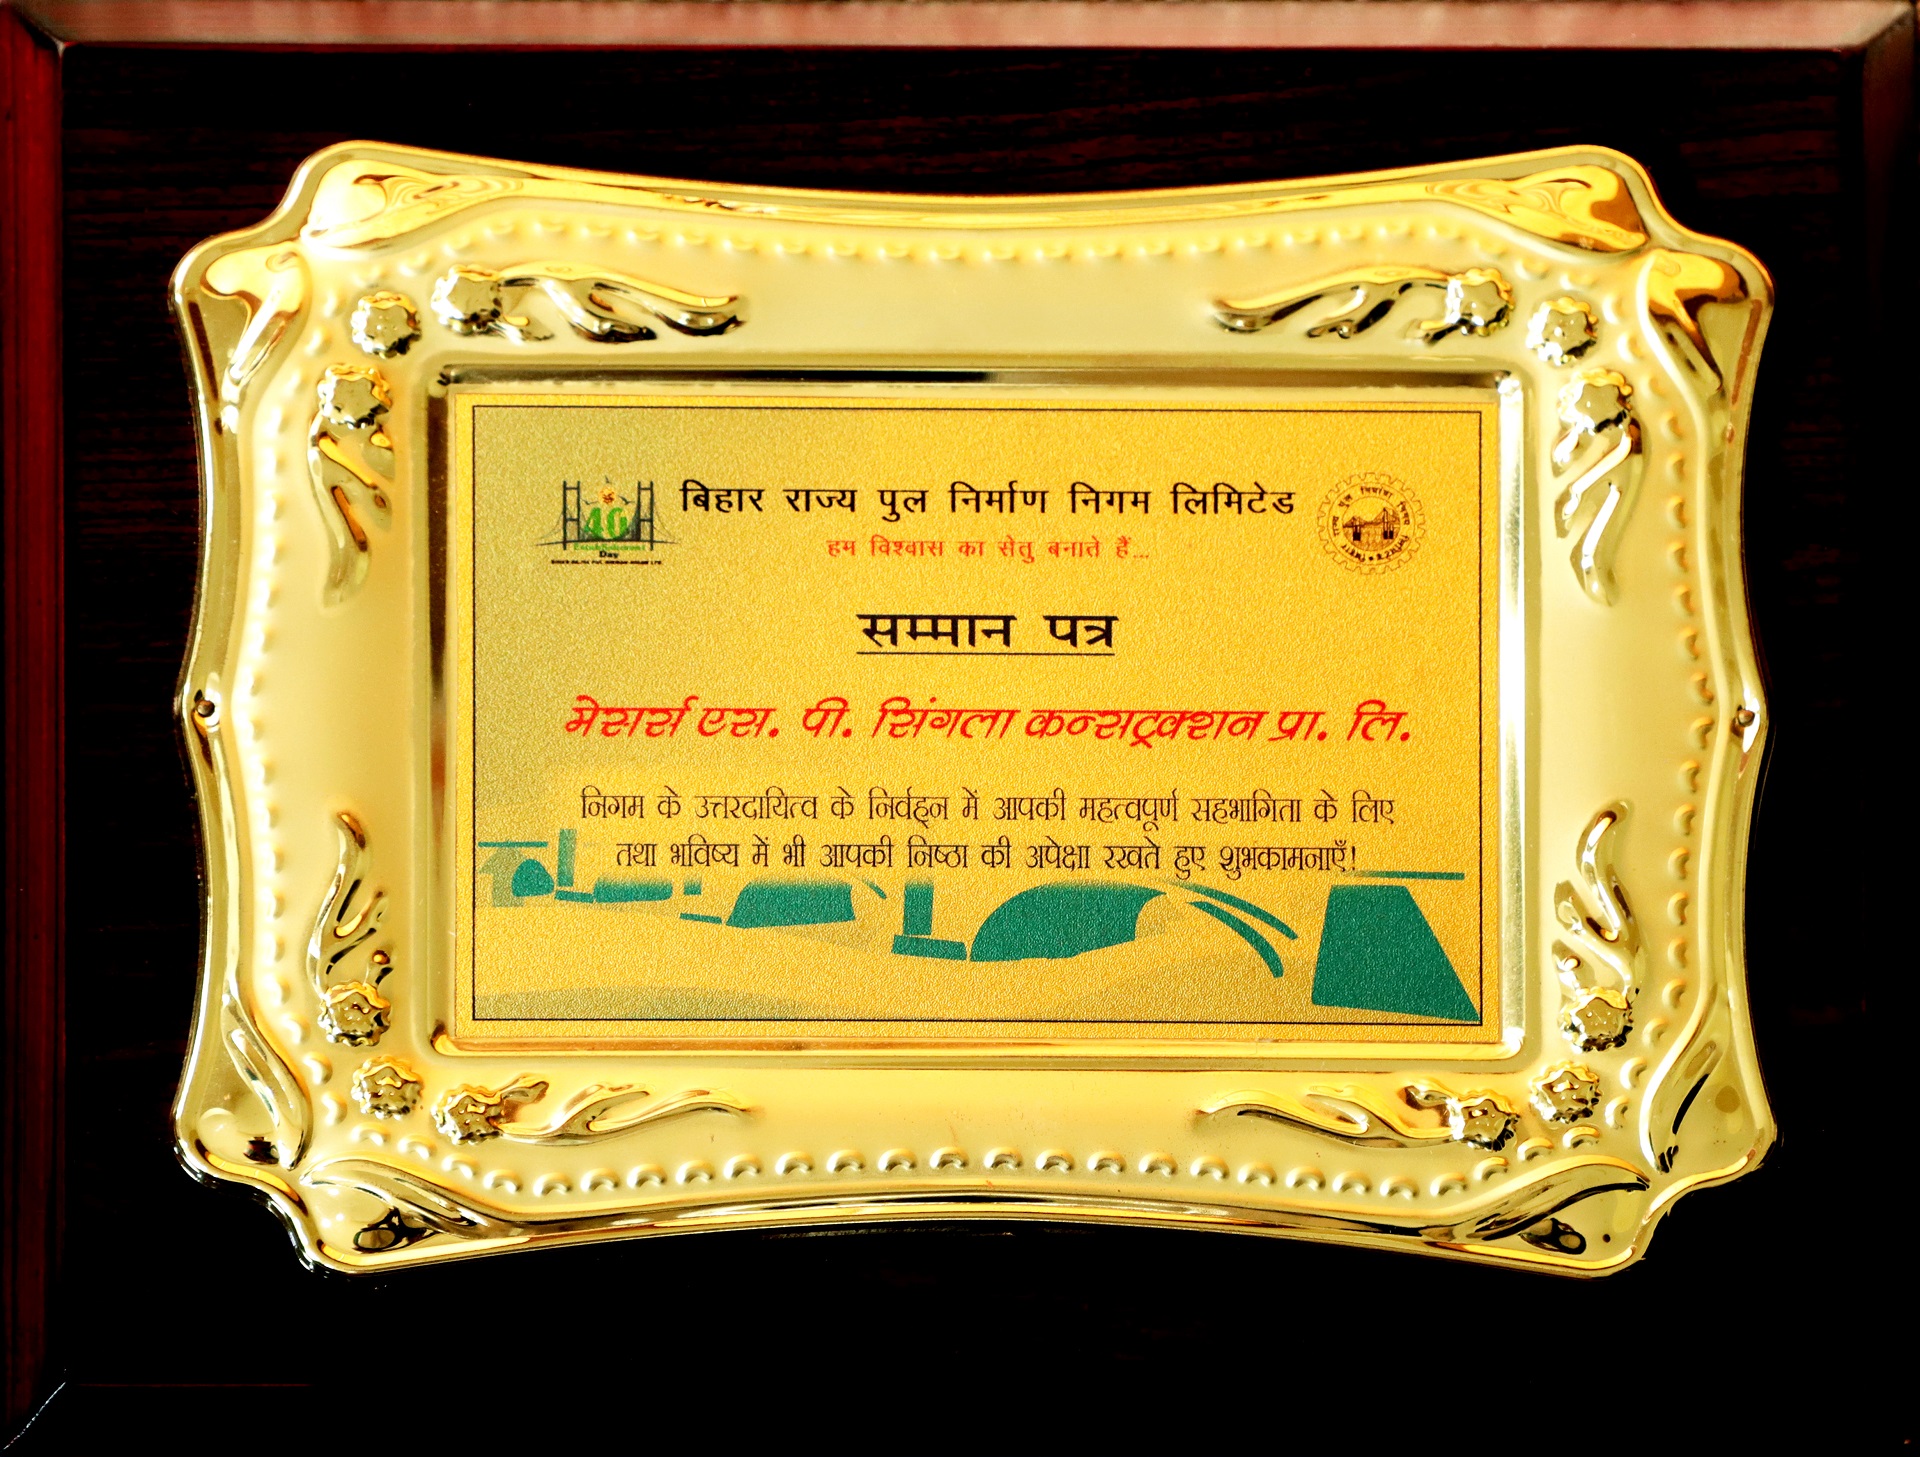 Citation conferred by Bihar Rajya Pul Nirman Nigam Limited